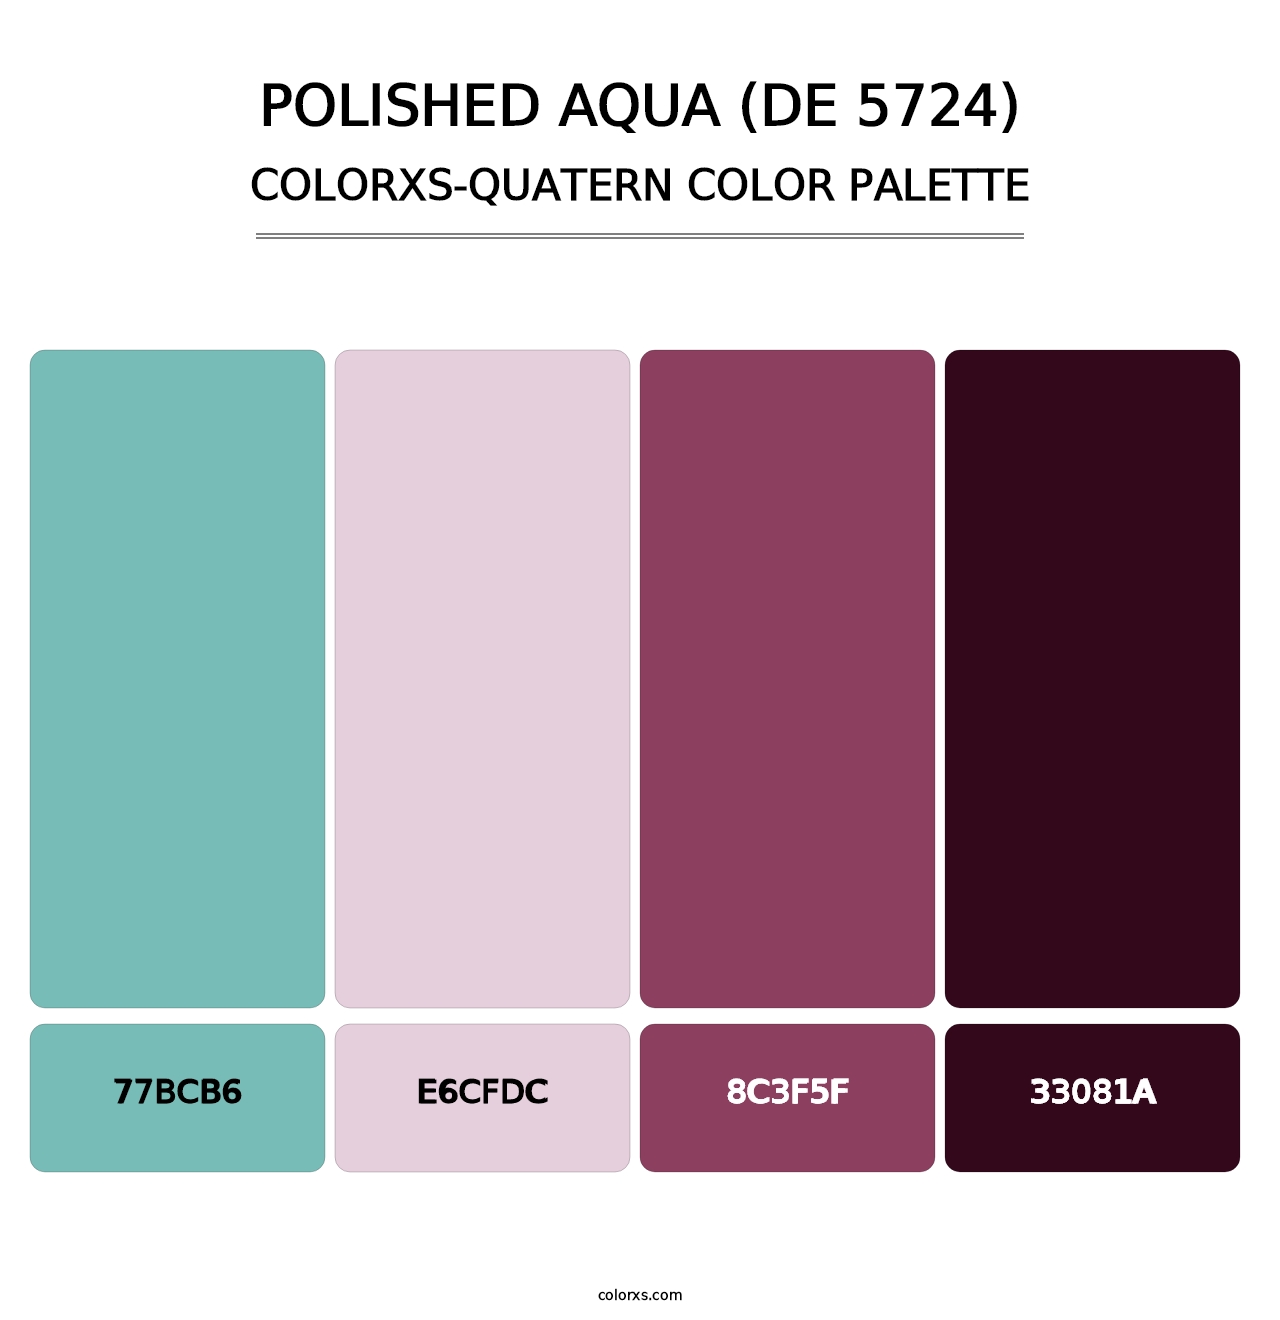 Polished Aqua (DE 5724) - Colorxs Quatern Palette